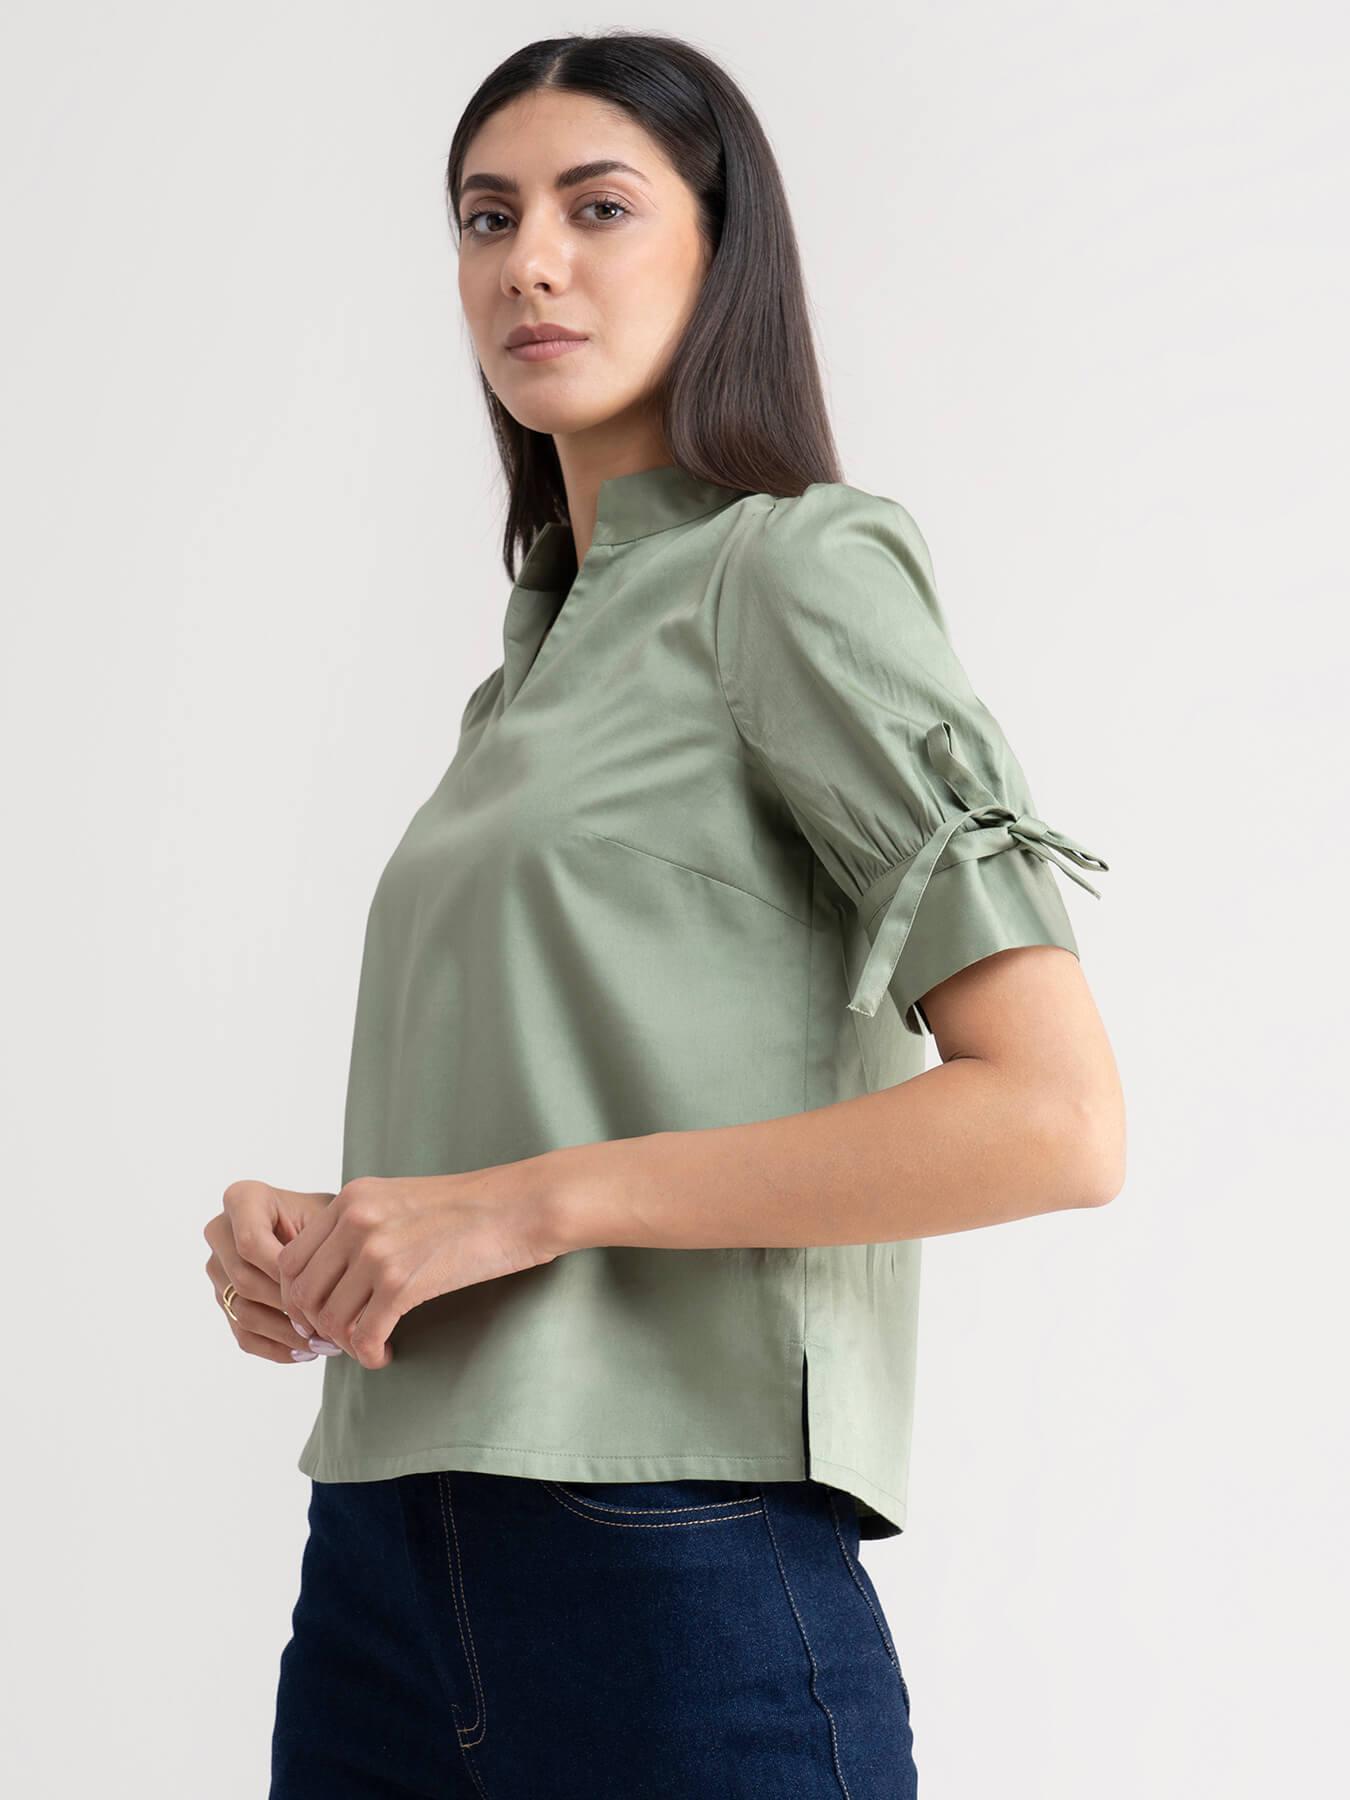 Cotton Tie Up Sleeve Top - Pista Green| Formal Tops